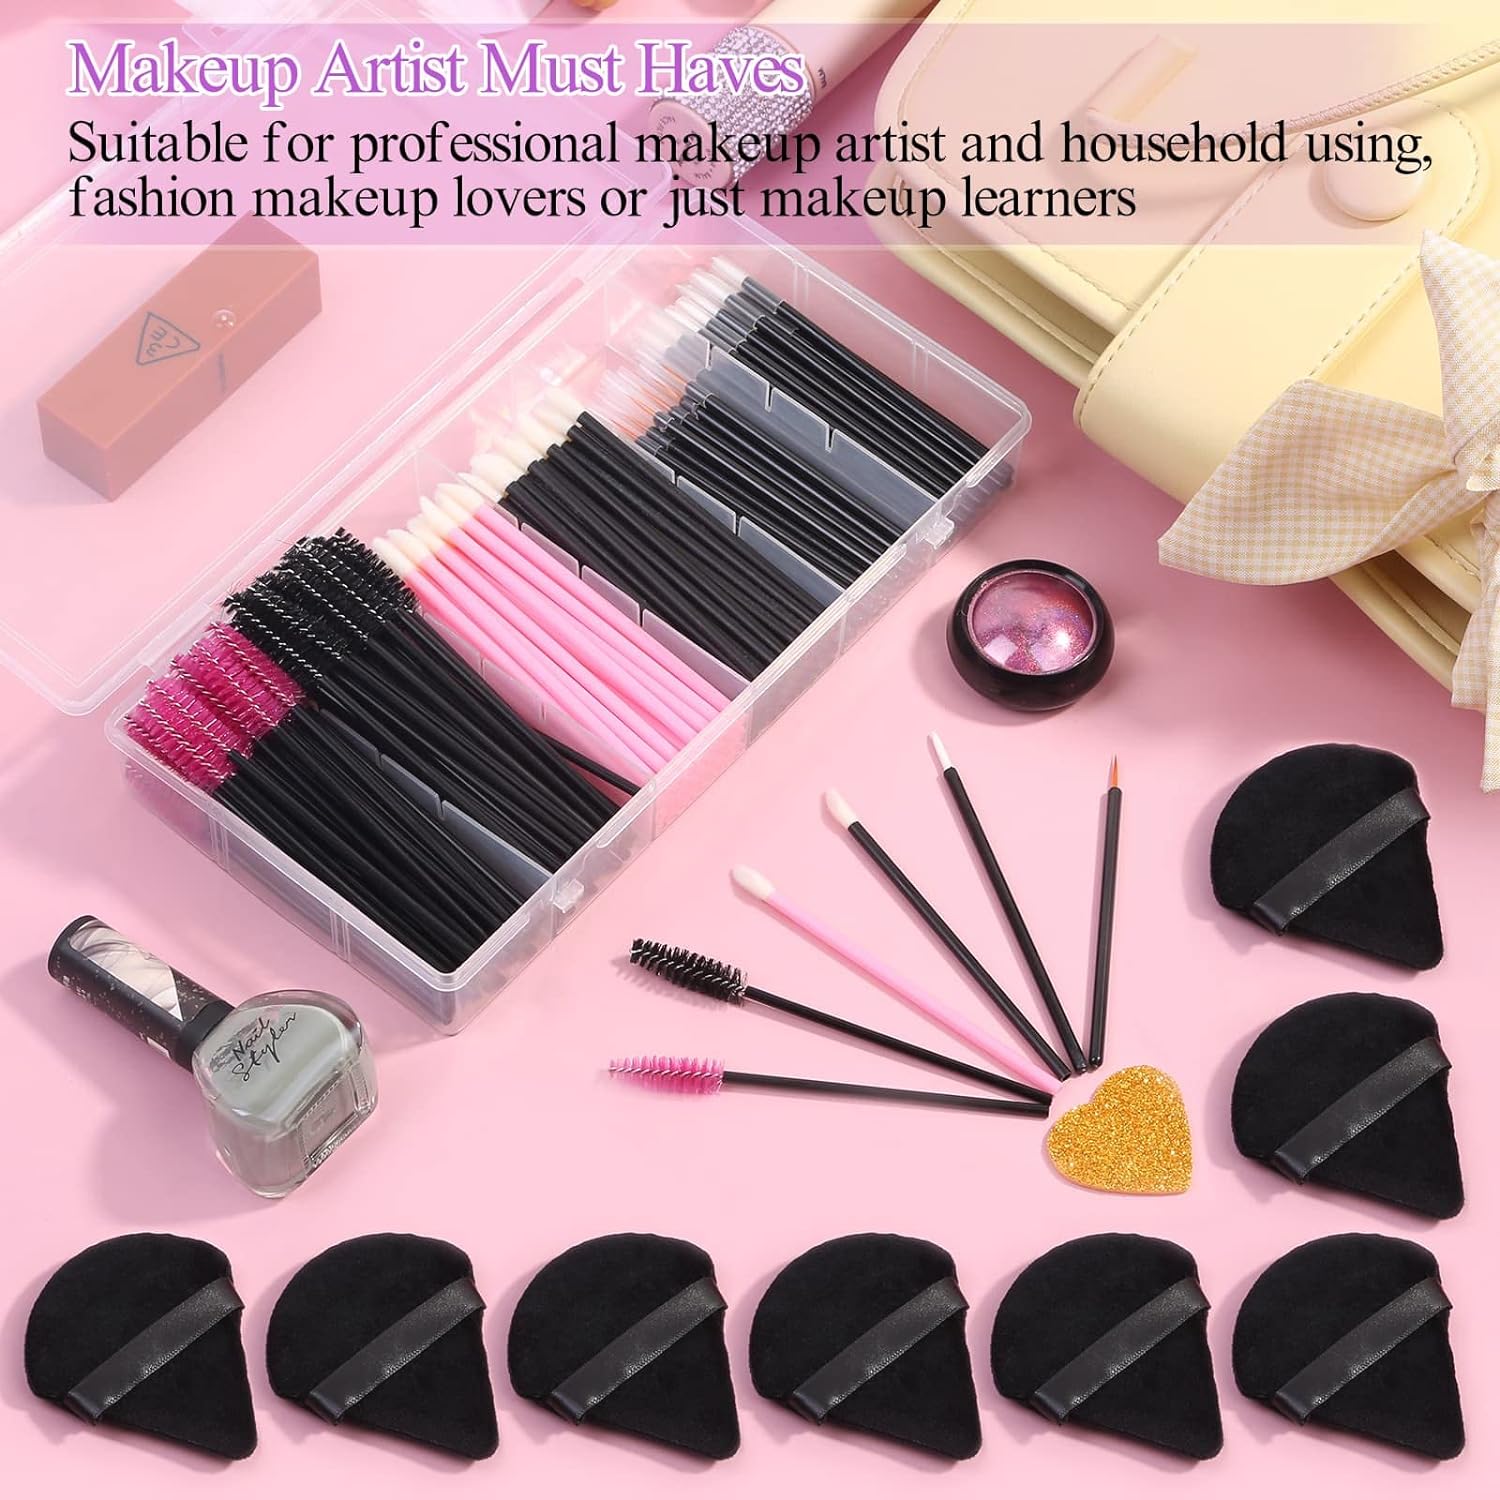 248 Pcs Disposable Makeup Applicators with Triangle Puffs Makeup Applicator Kit